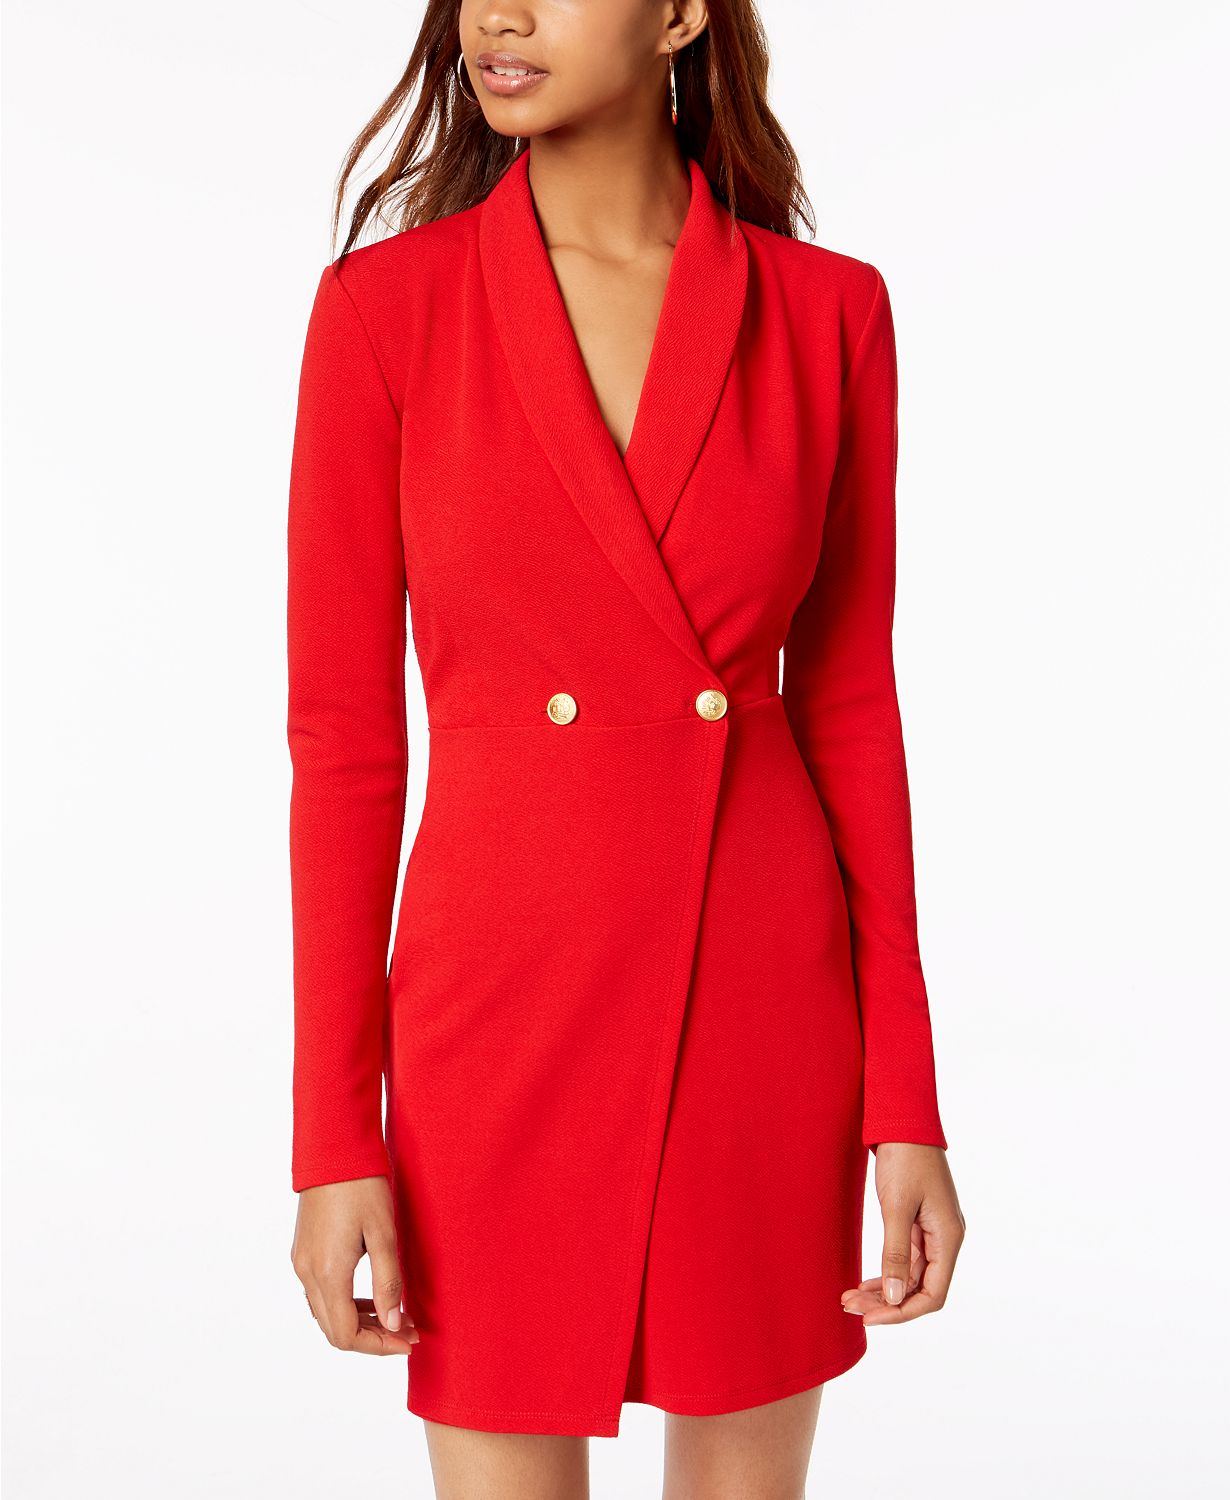 Красное платье с пиджаком. Красное платье с жакетом. Красное платье пиджак. Платье пиджак с запахом. Двубортное платье пиджак.